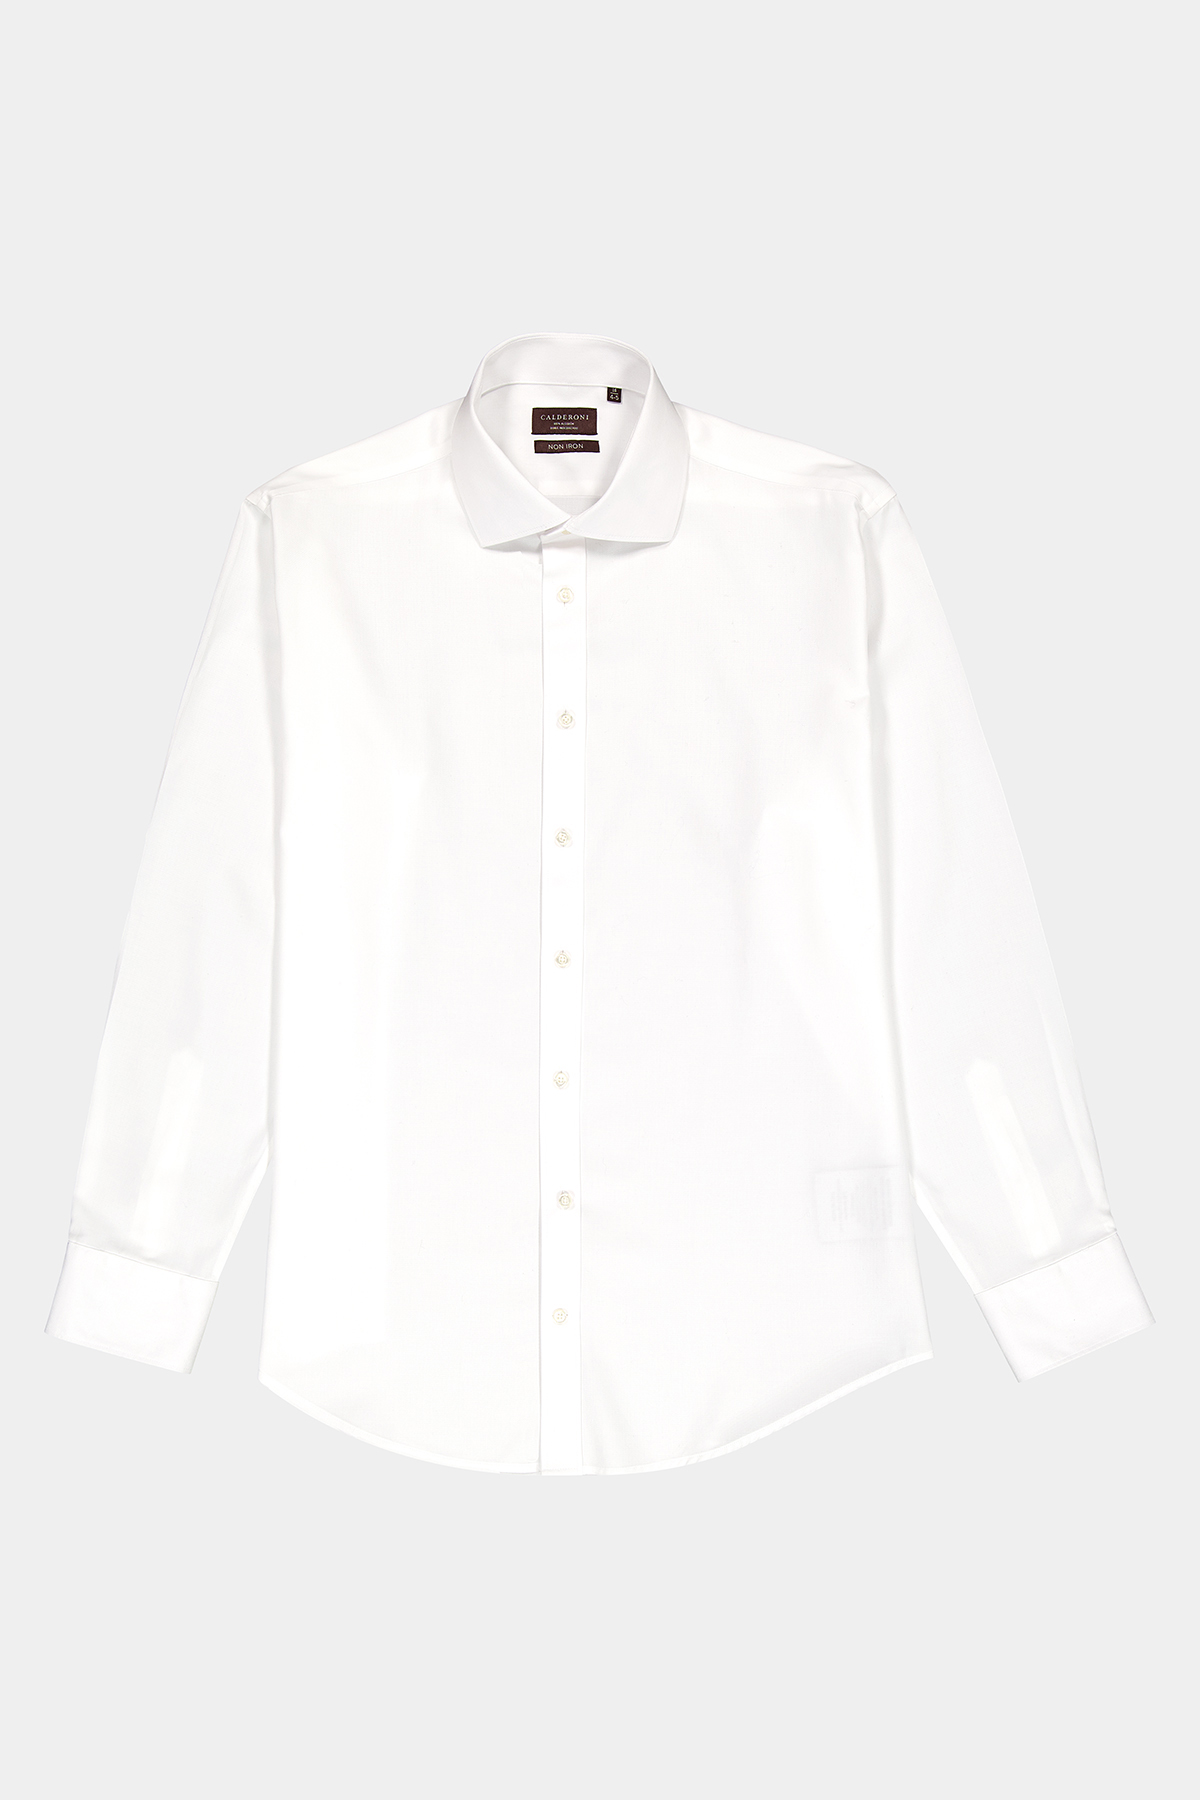 Camisa Vestir Calderoni Regular Fit Blanco